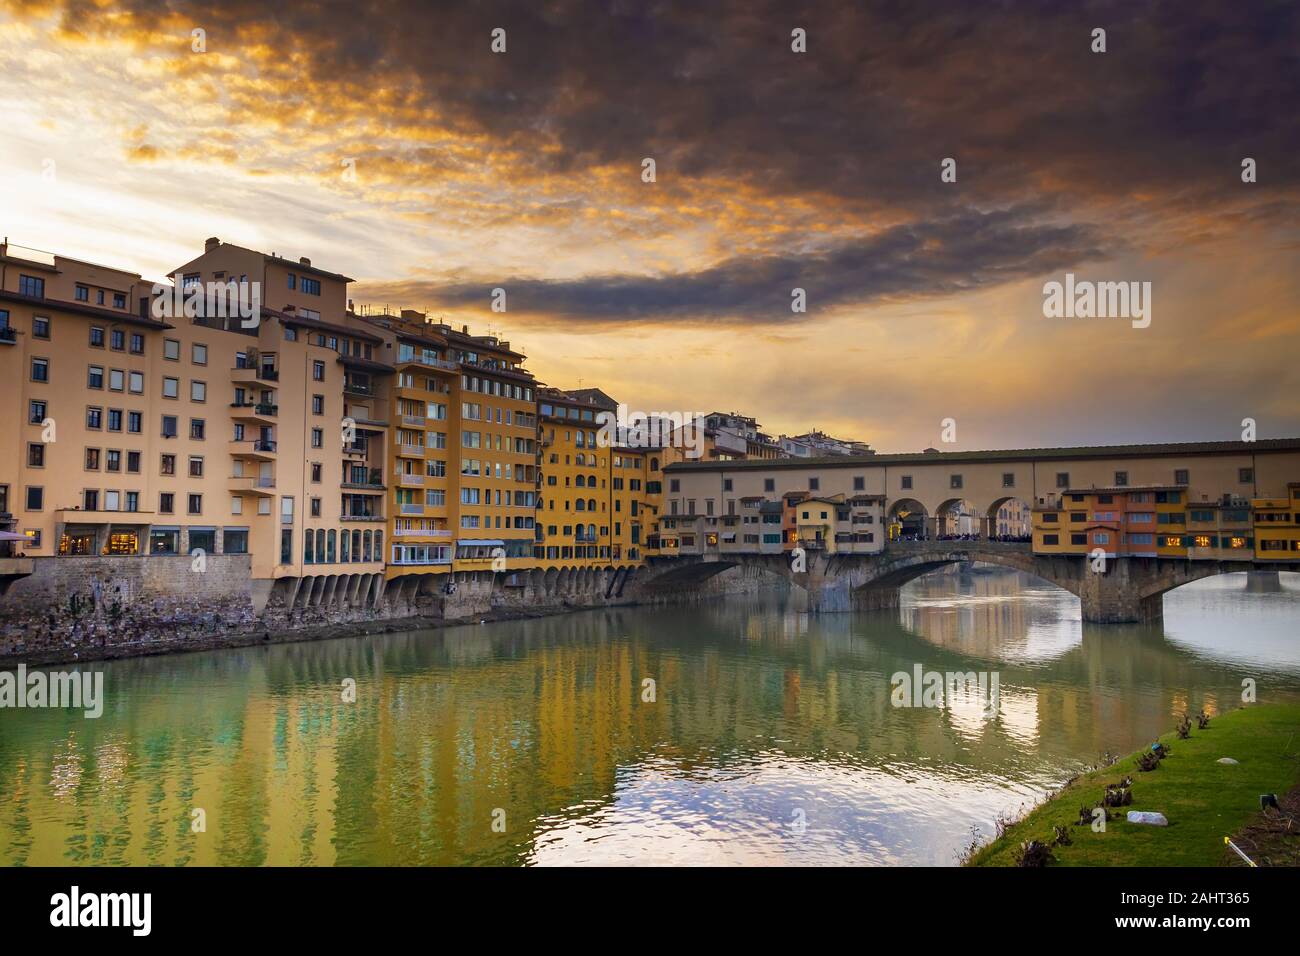 Vieux pont de Florence au coucher du soleil Banque D'Images